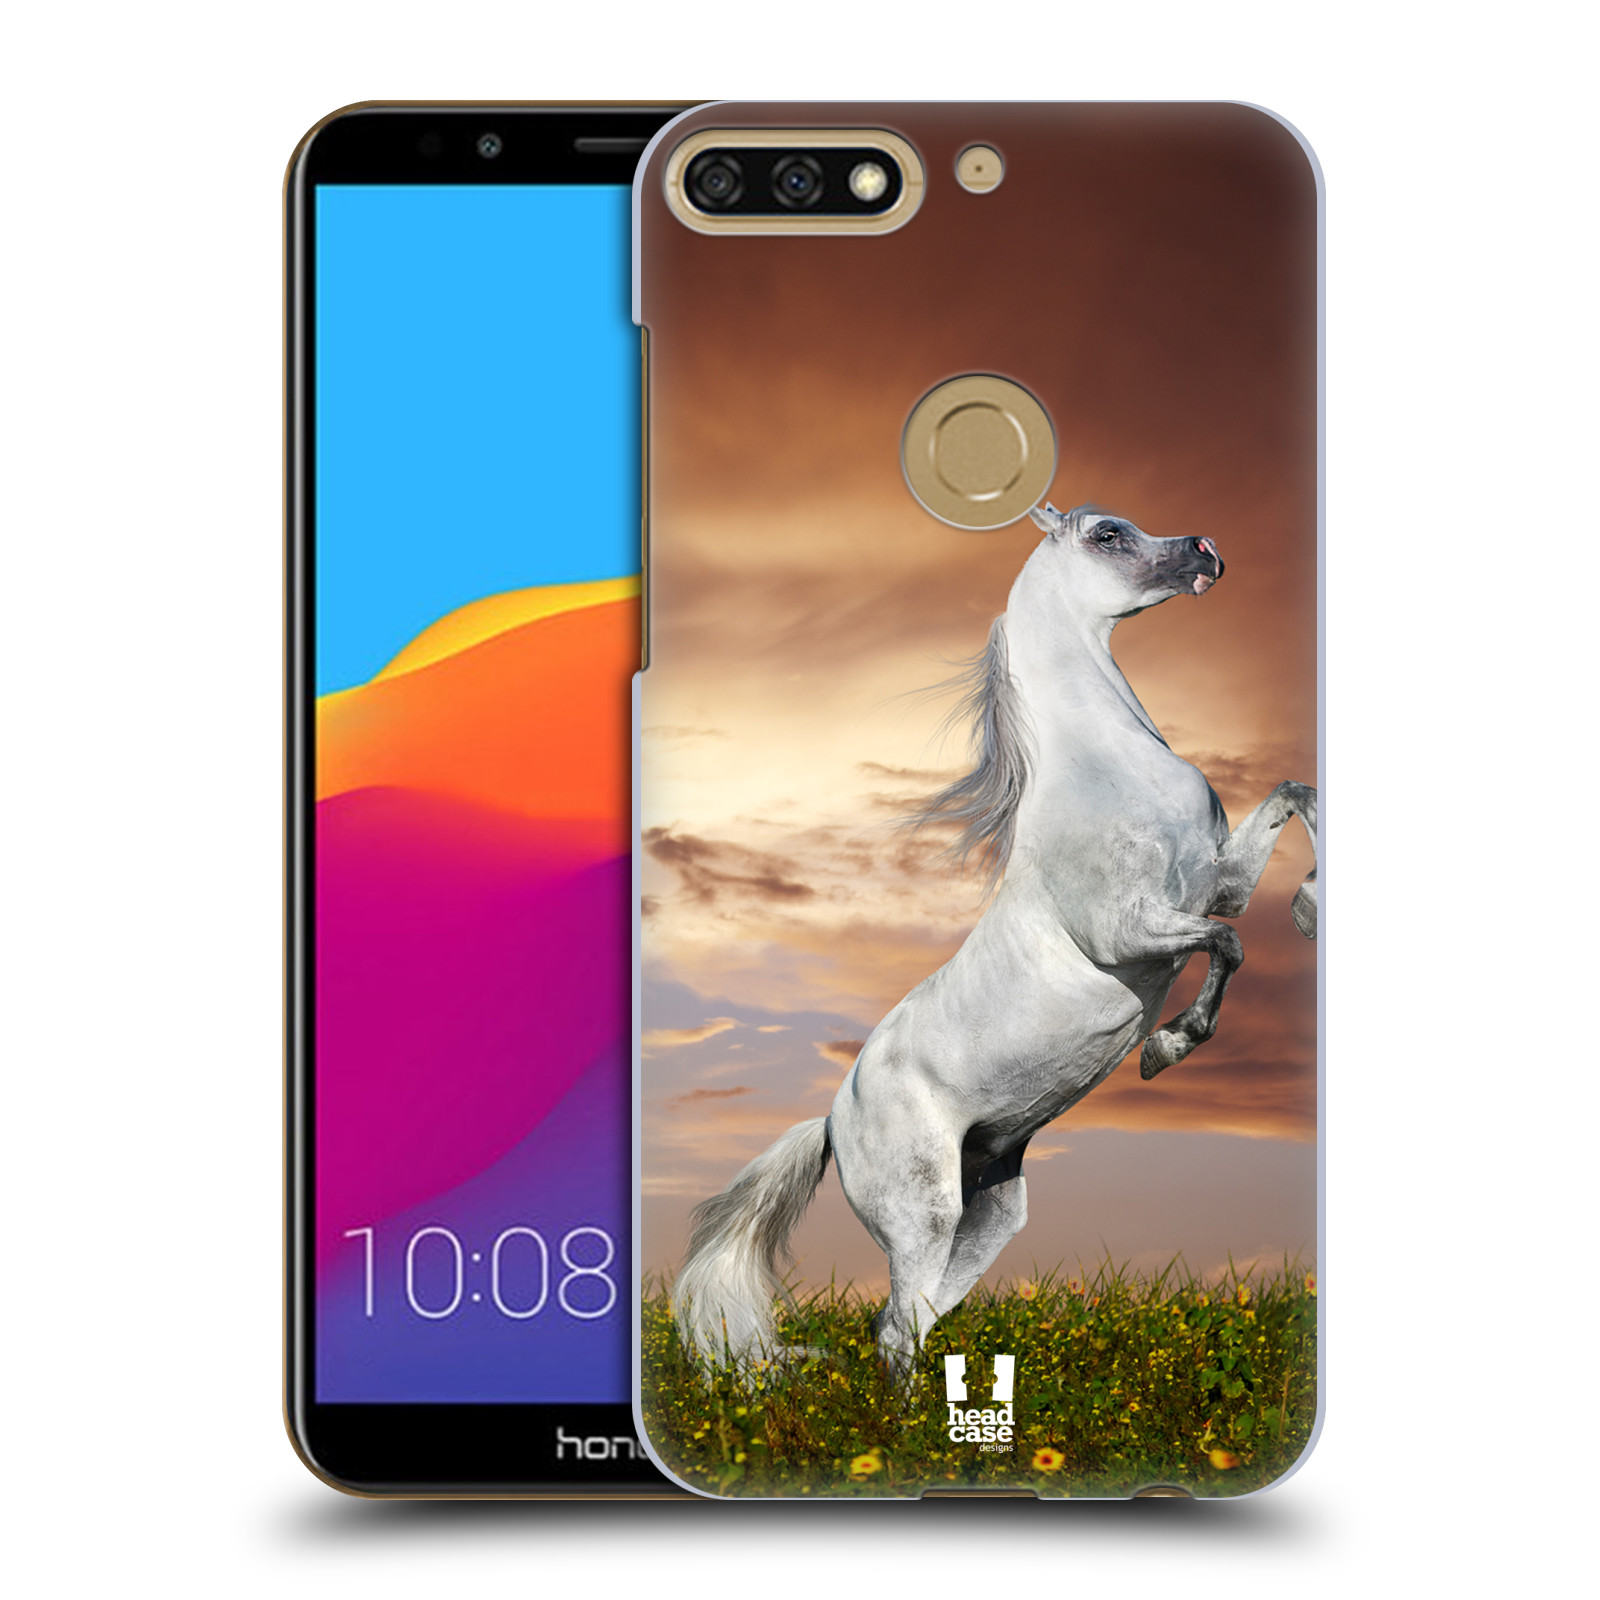 HEAD CASE plastový obal na mobil Honor 7c vzor Divočina, Divoký život a zvířata foto DIVOKÝ KŮŇ MUSTANG BÍLÁ